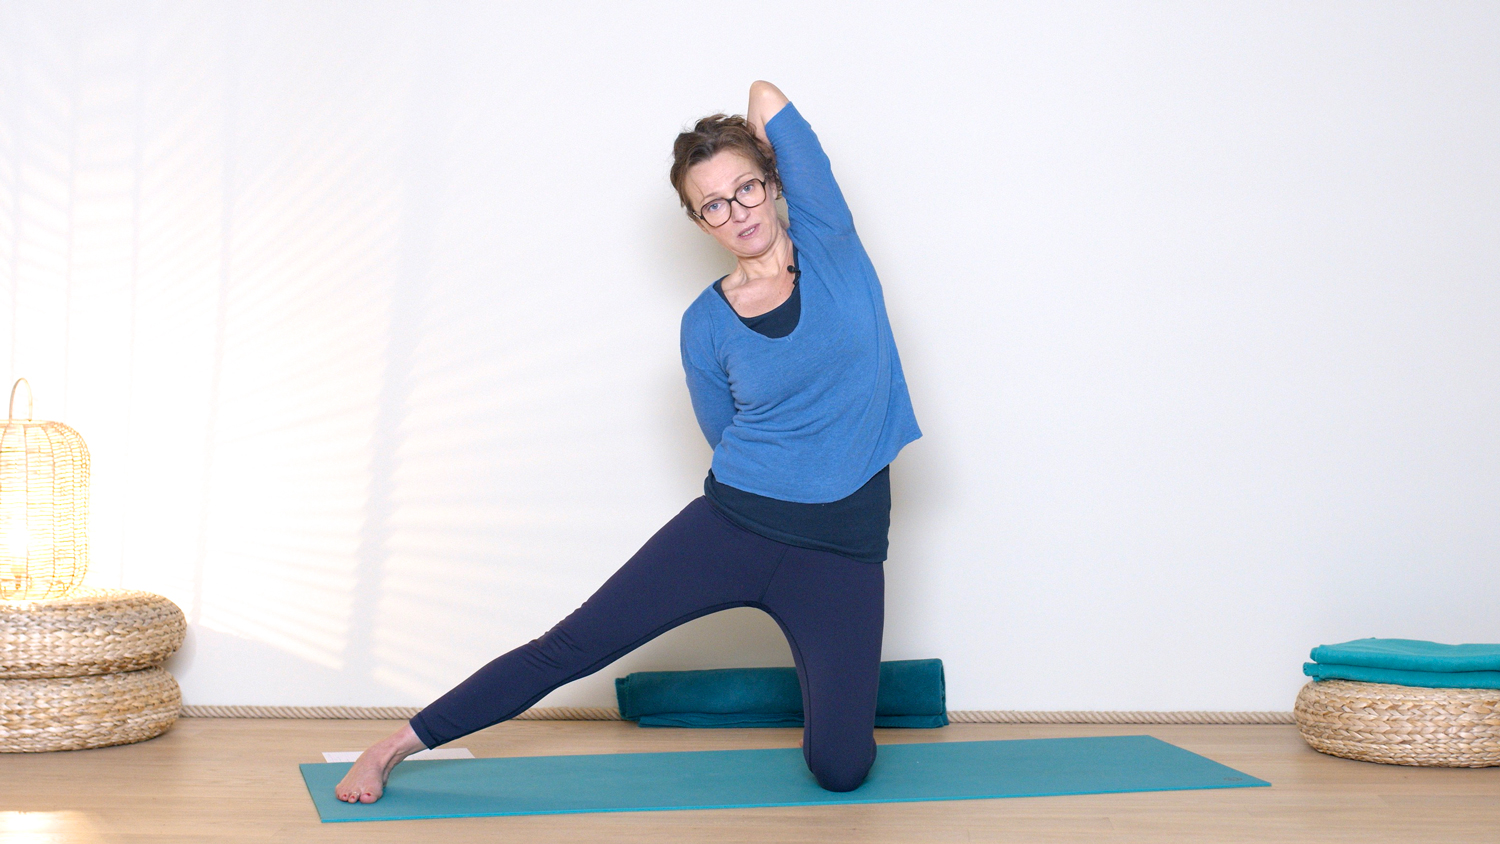 Yoga dynamique autour de l'élément Air | Cours de yoga en ligne avec Delphine Denis | Hatha Yoga dynamique